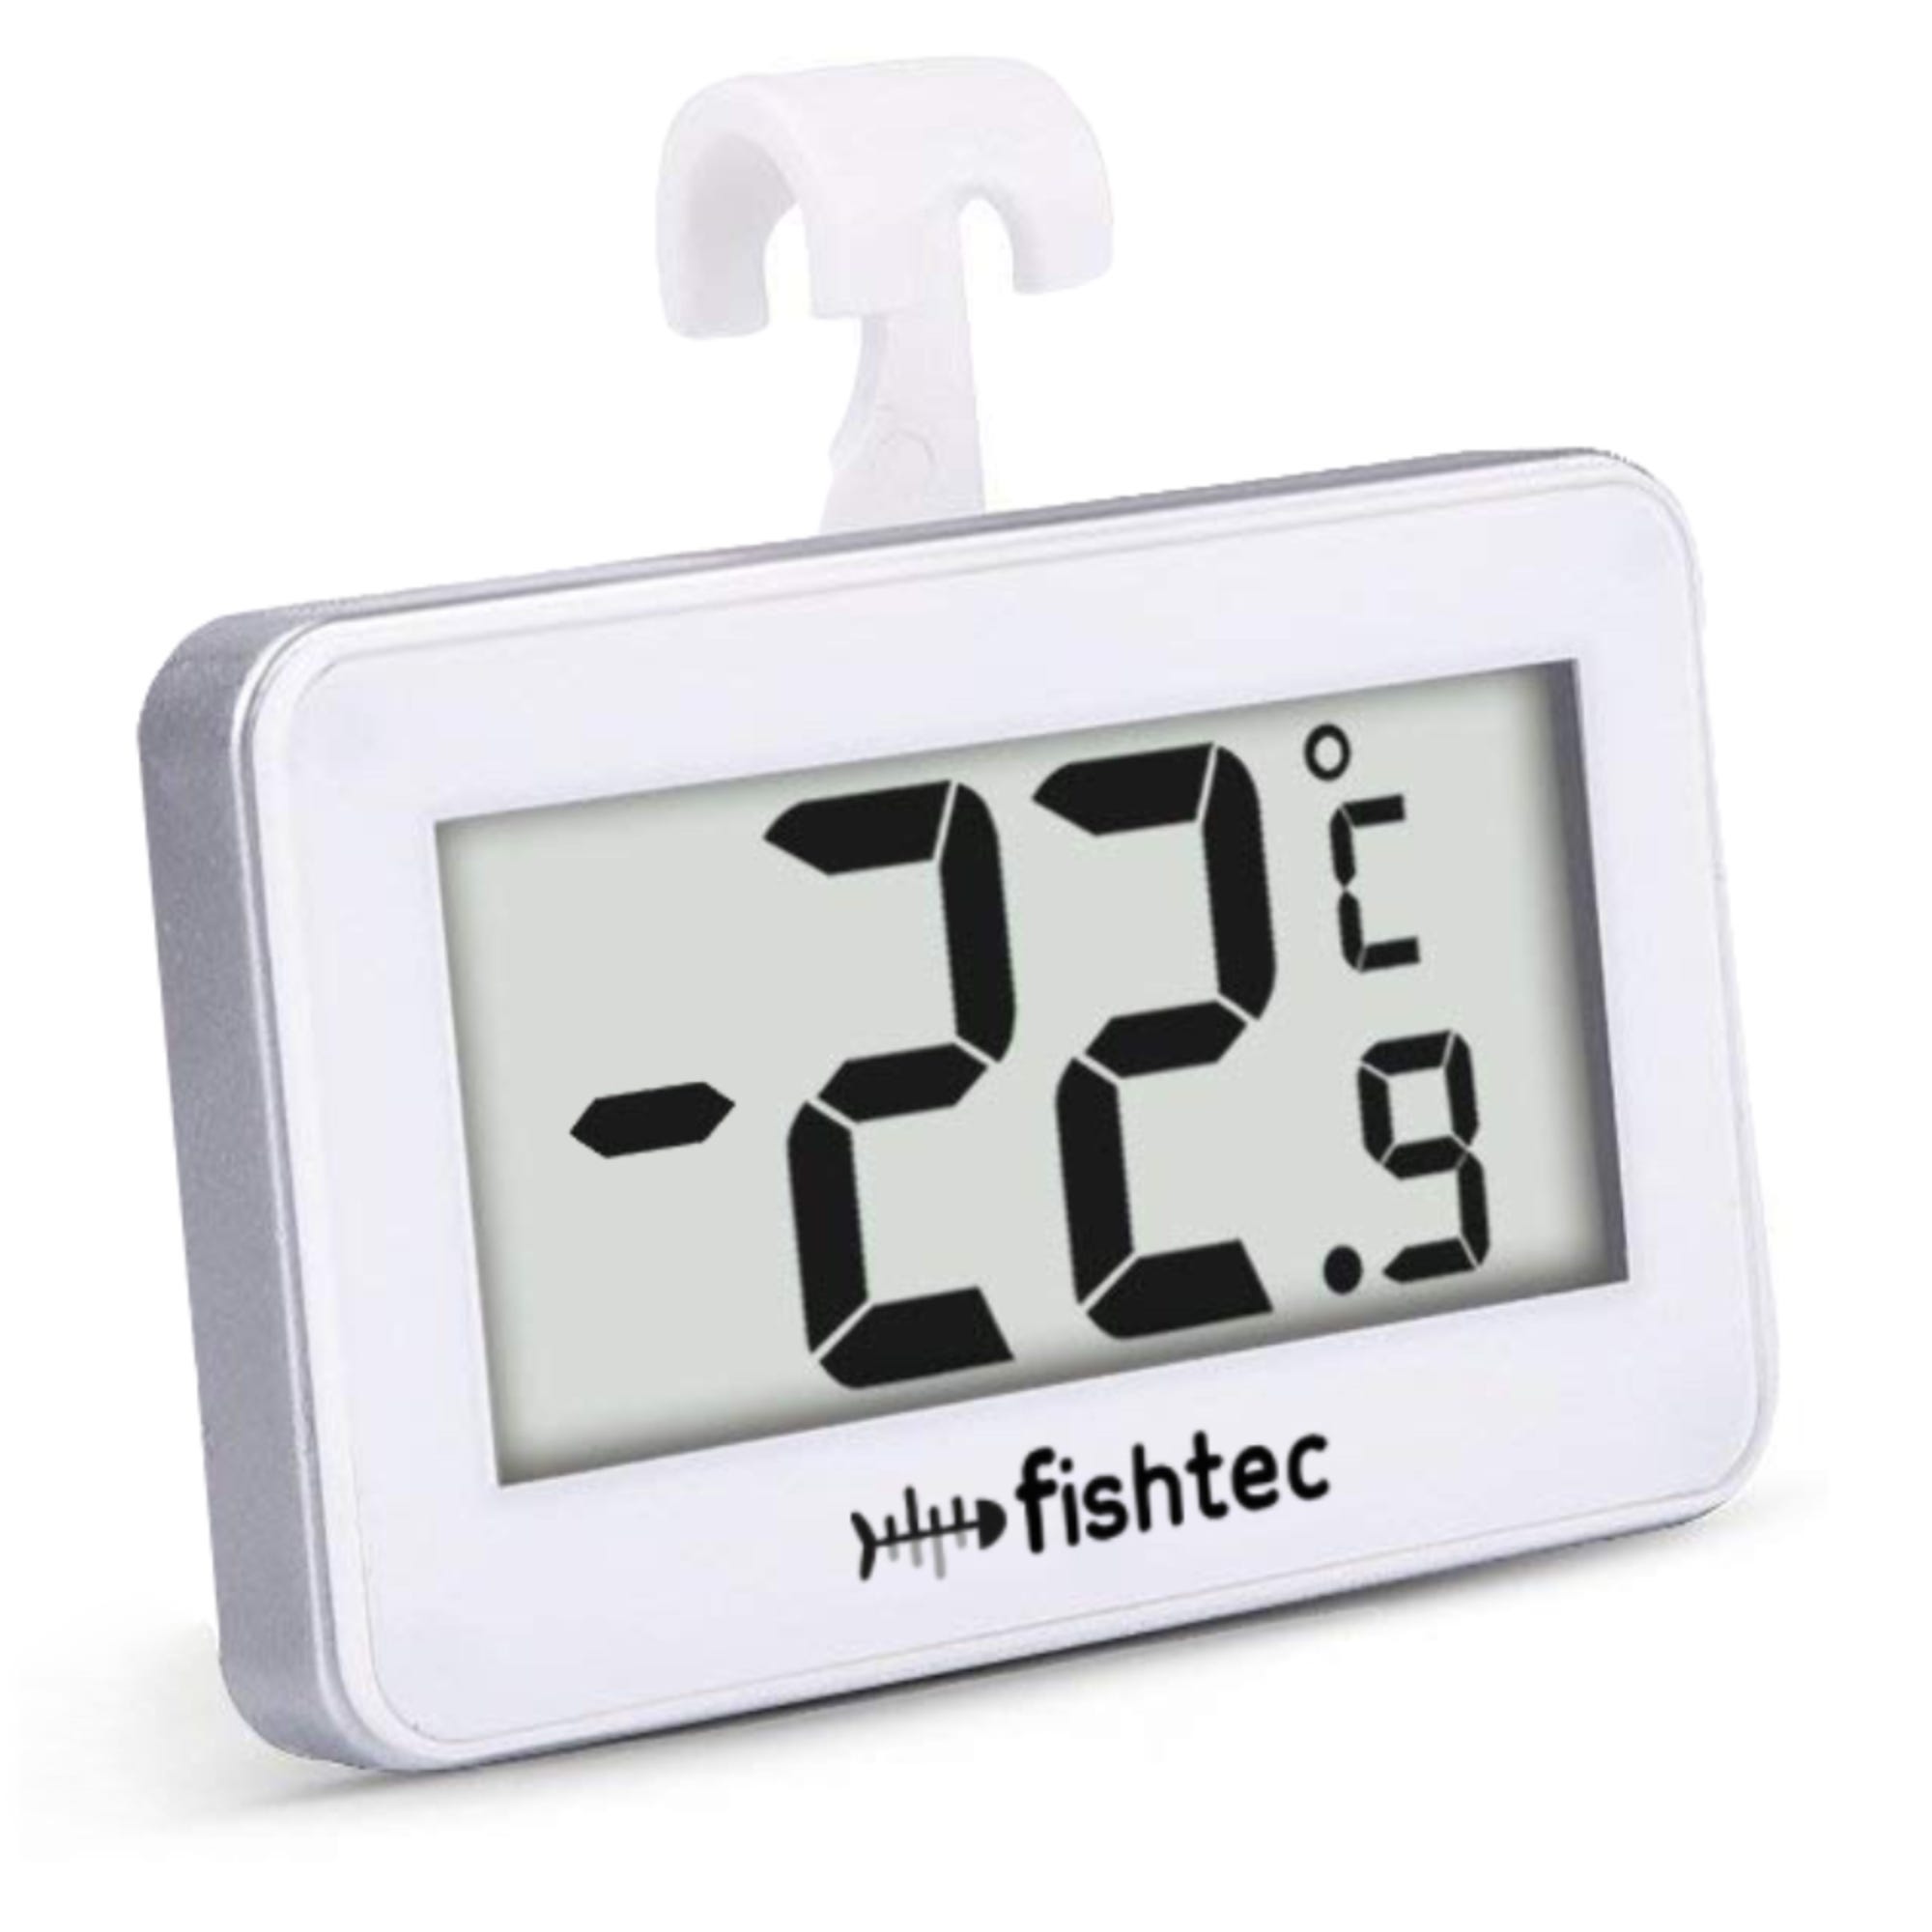 Thermometre Frigo-congel